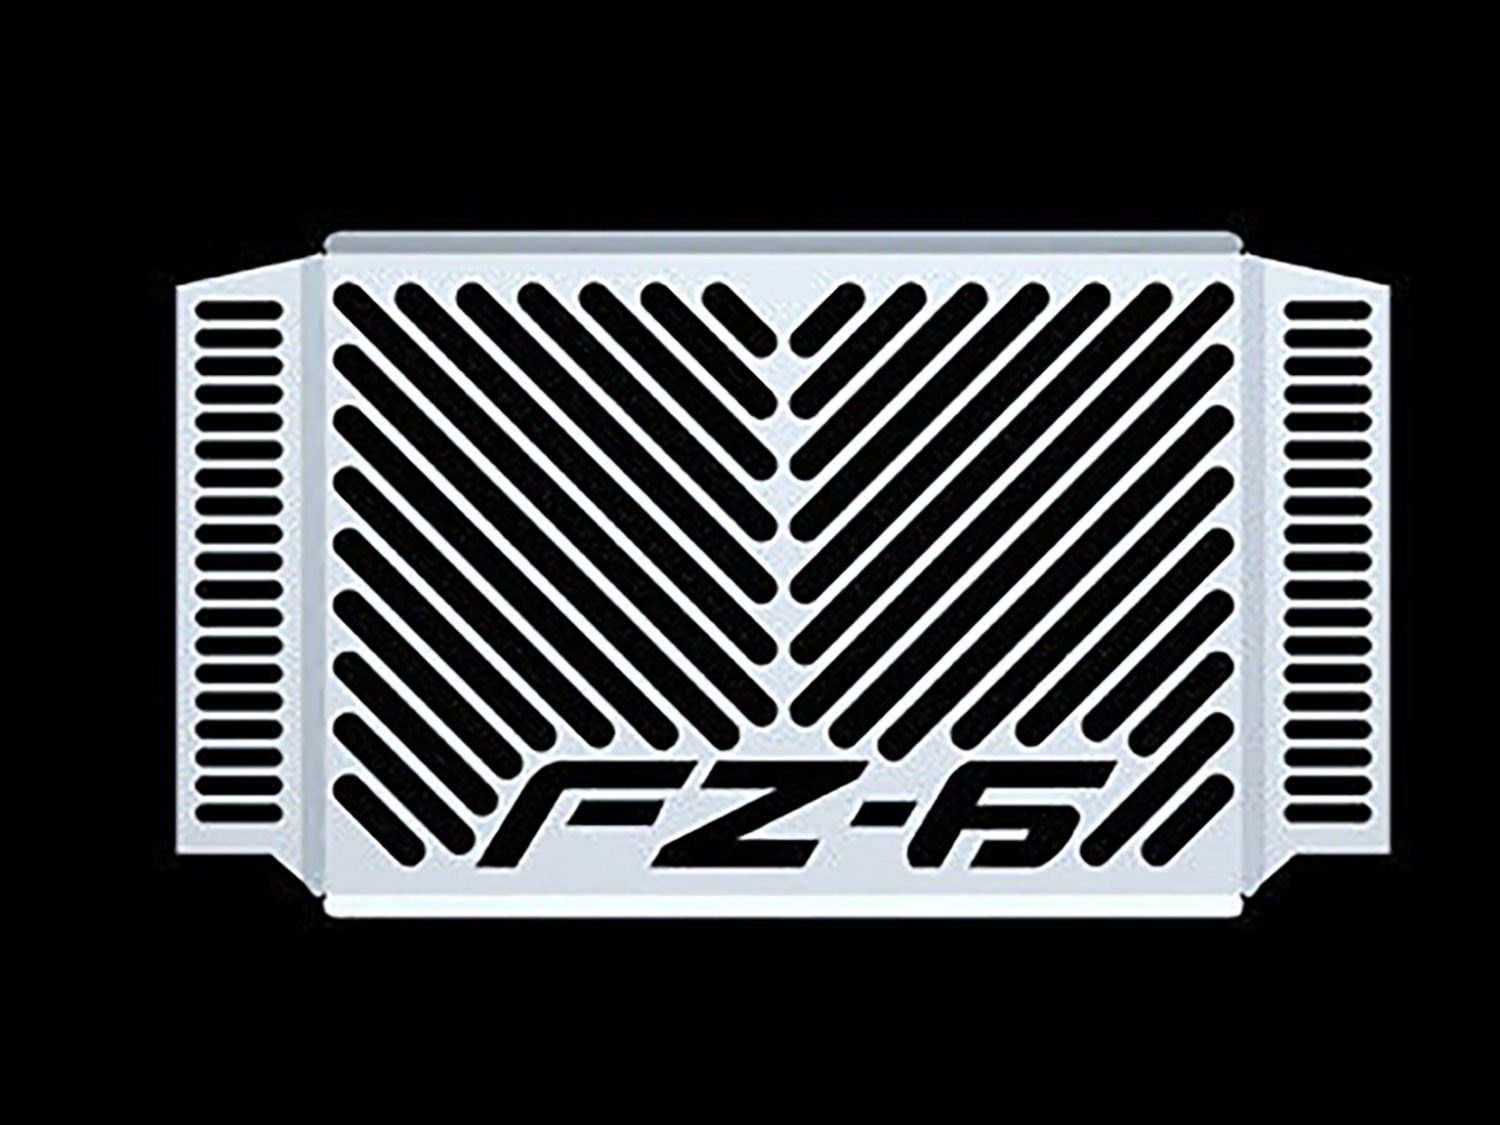 ZIEGER Motorrad-Additiv Kühlerabdeckung für Yamaha FZ6 / Fazer BJ 2007-10 Logo silber, Motorradkühlerabdeckung